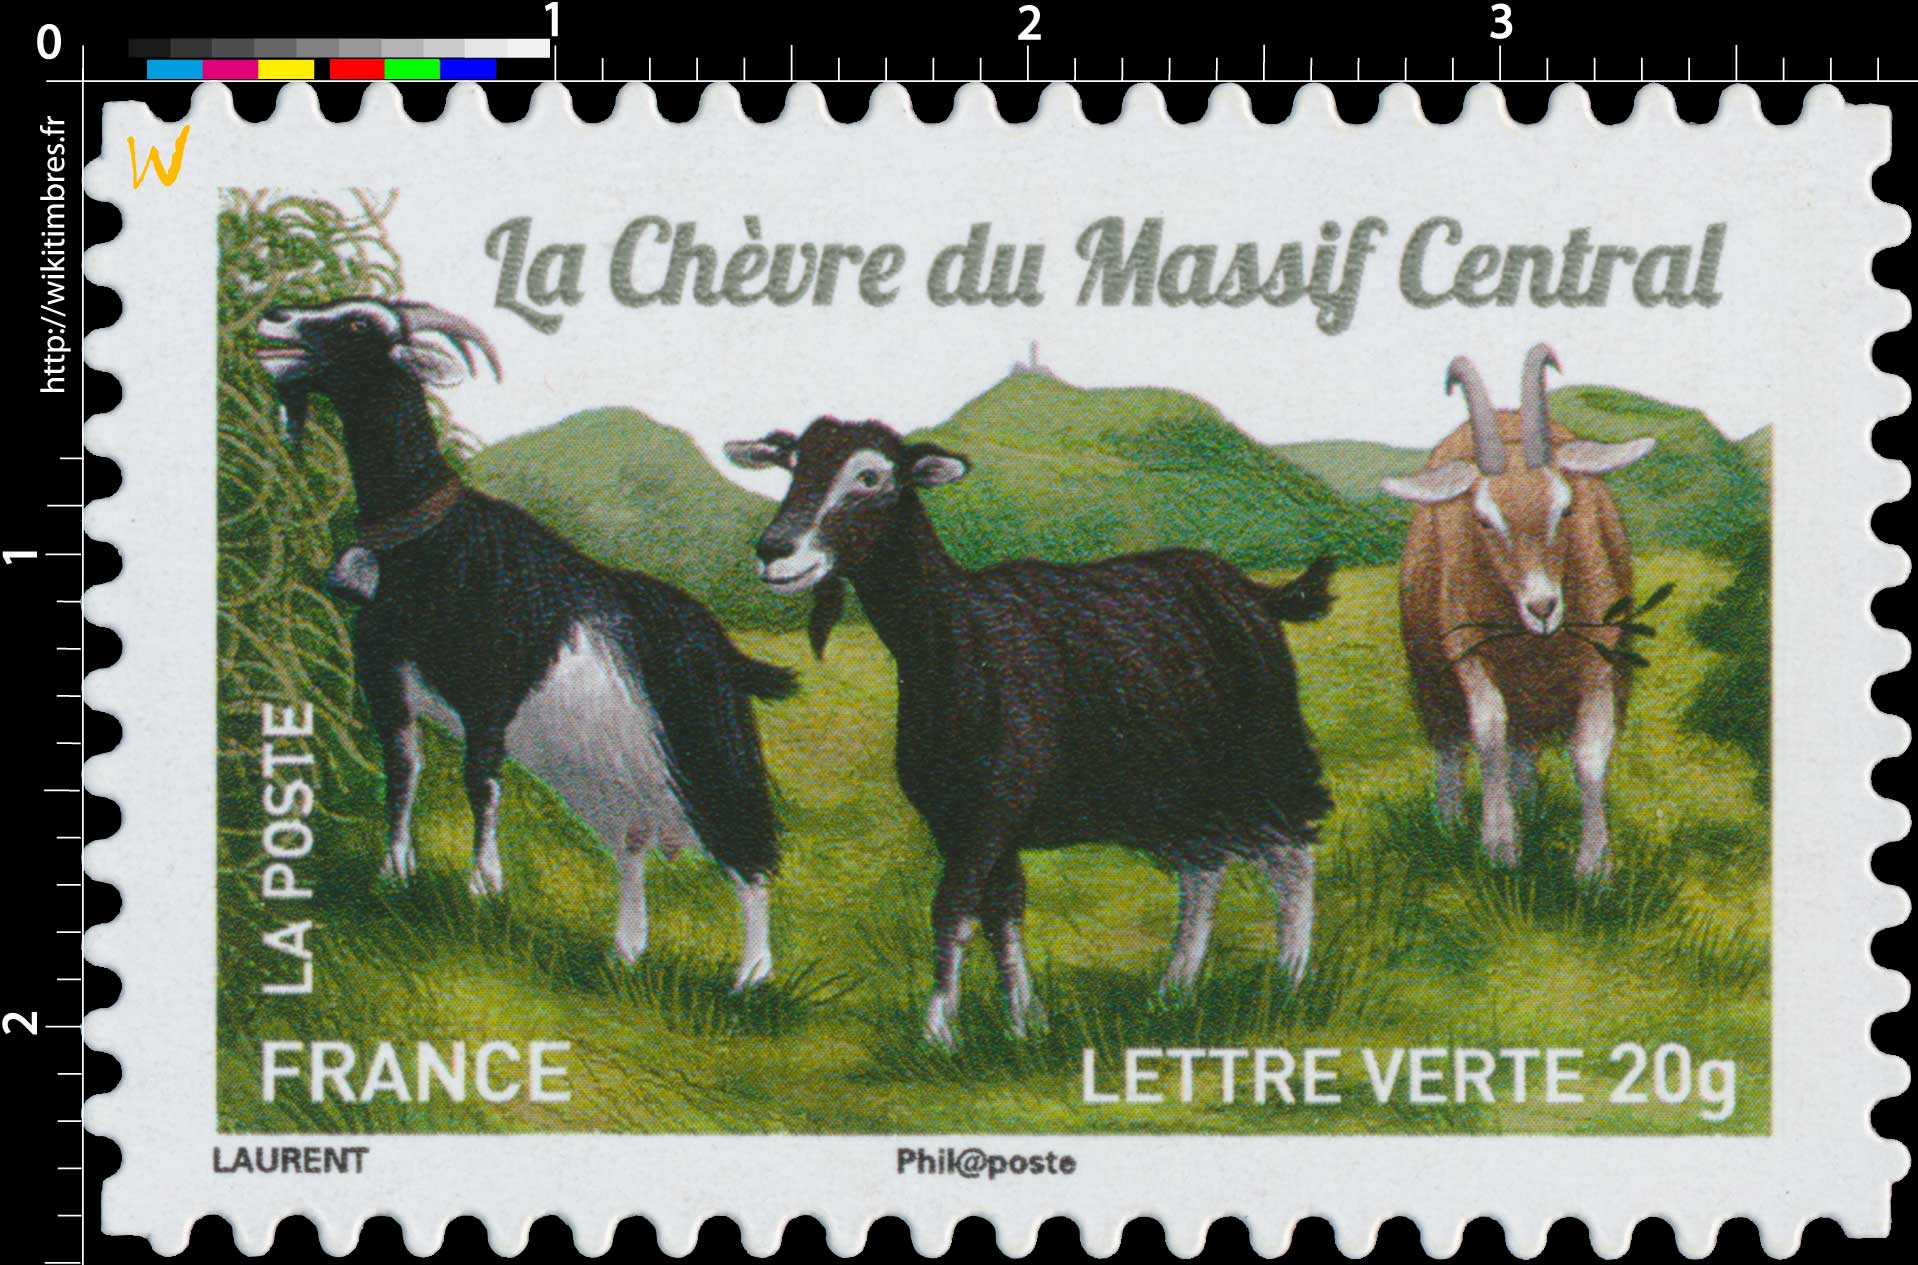 2015 La Chèvre du Massif Central